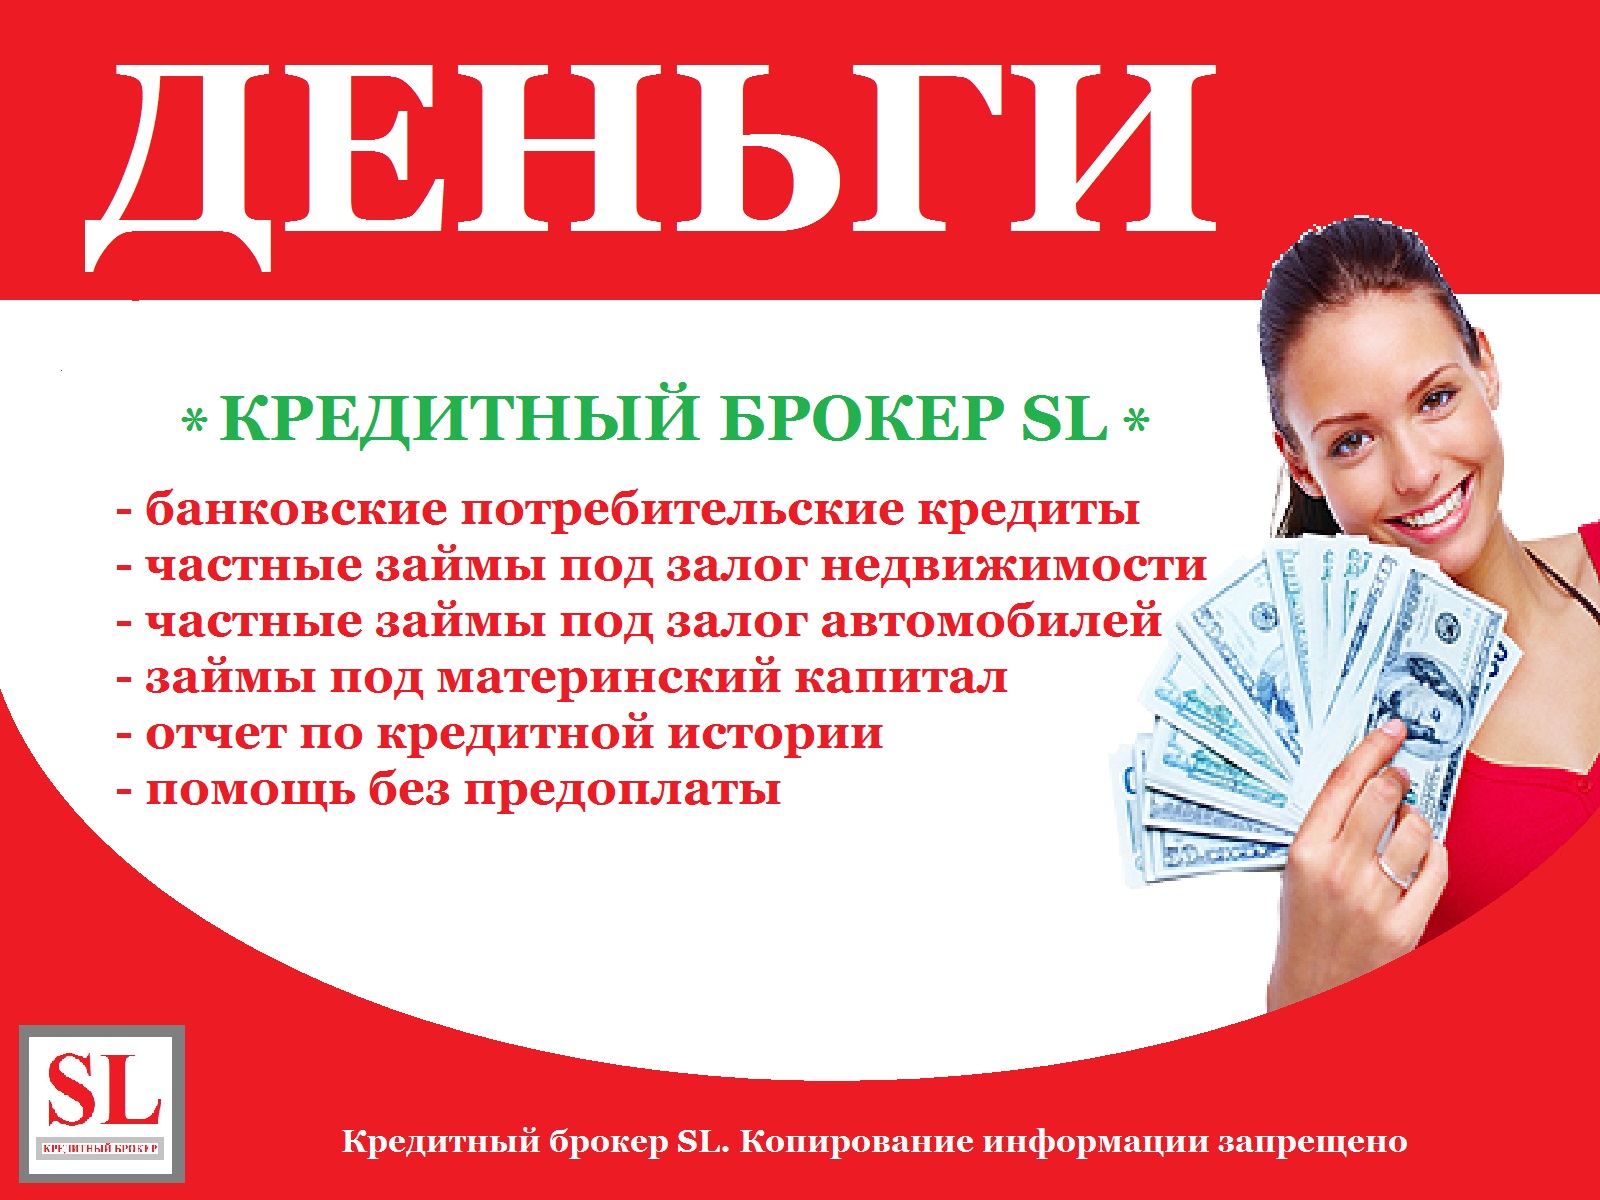 Кредитный займ город новошахтинск онлайн